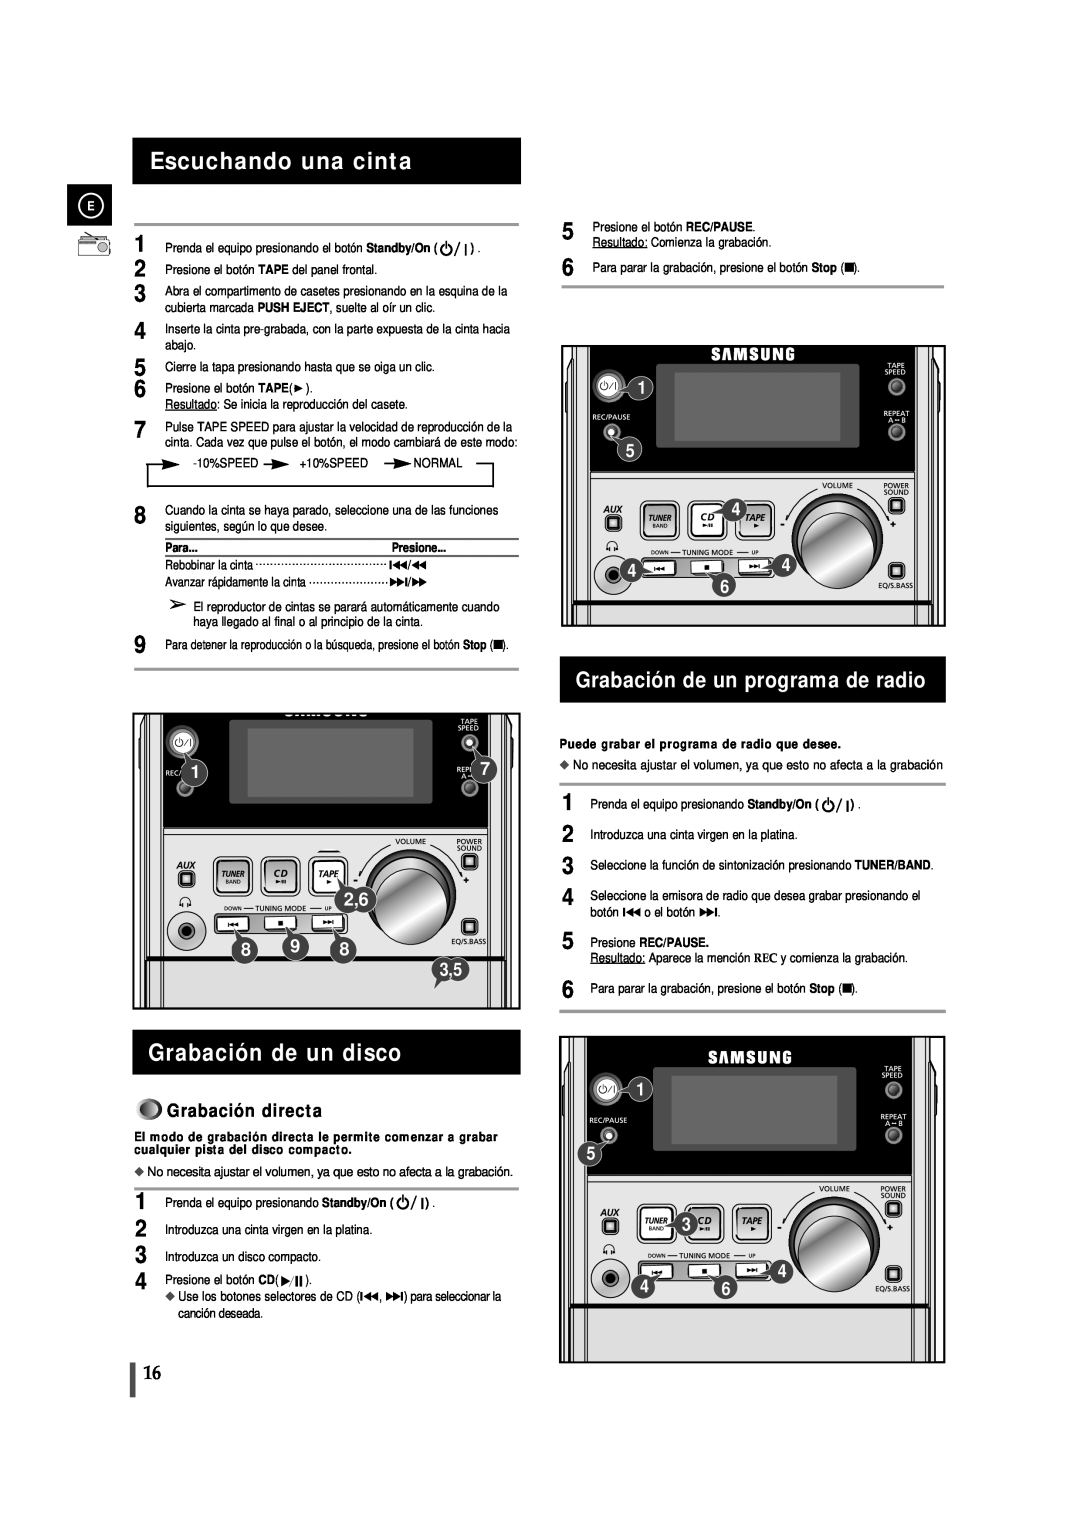 Samsung MM-J5 manual Escuchando una cinta, Grabación de un disco, Grabación de un programa de radio, Grabación directa 